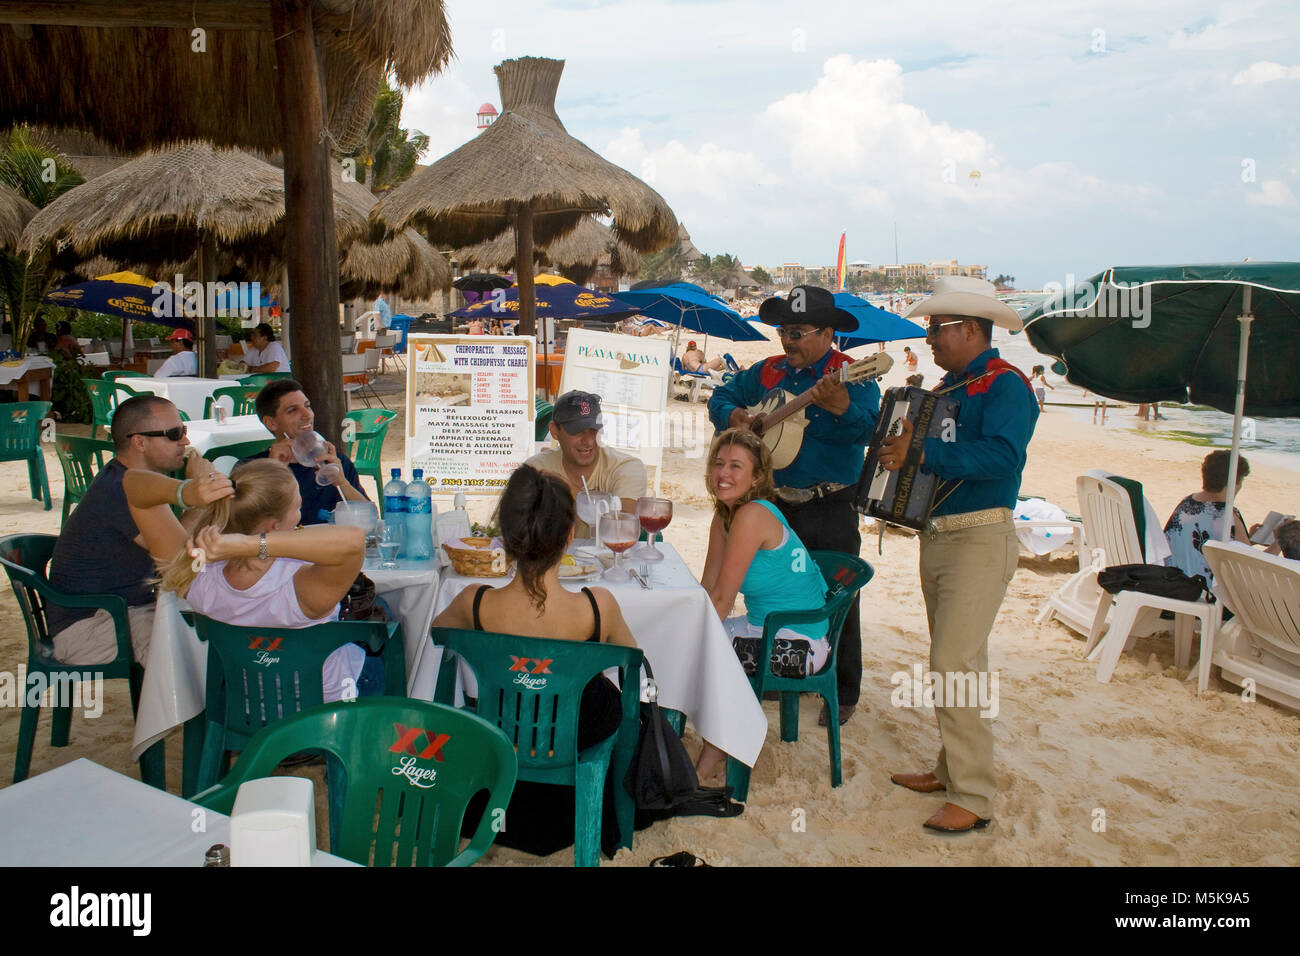 Músicos tocando una serenata mexicana en una mesa de un restaurante en la playa, la playa de Playa del Carmen, México, el Caribe Foto de stock